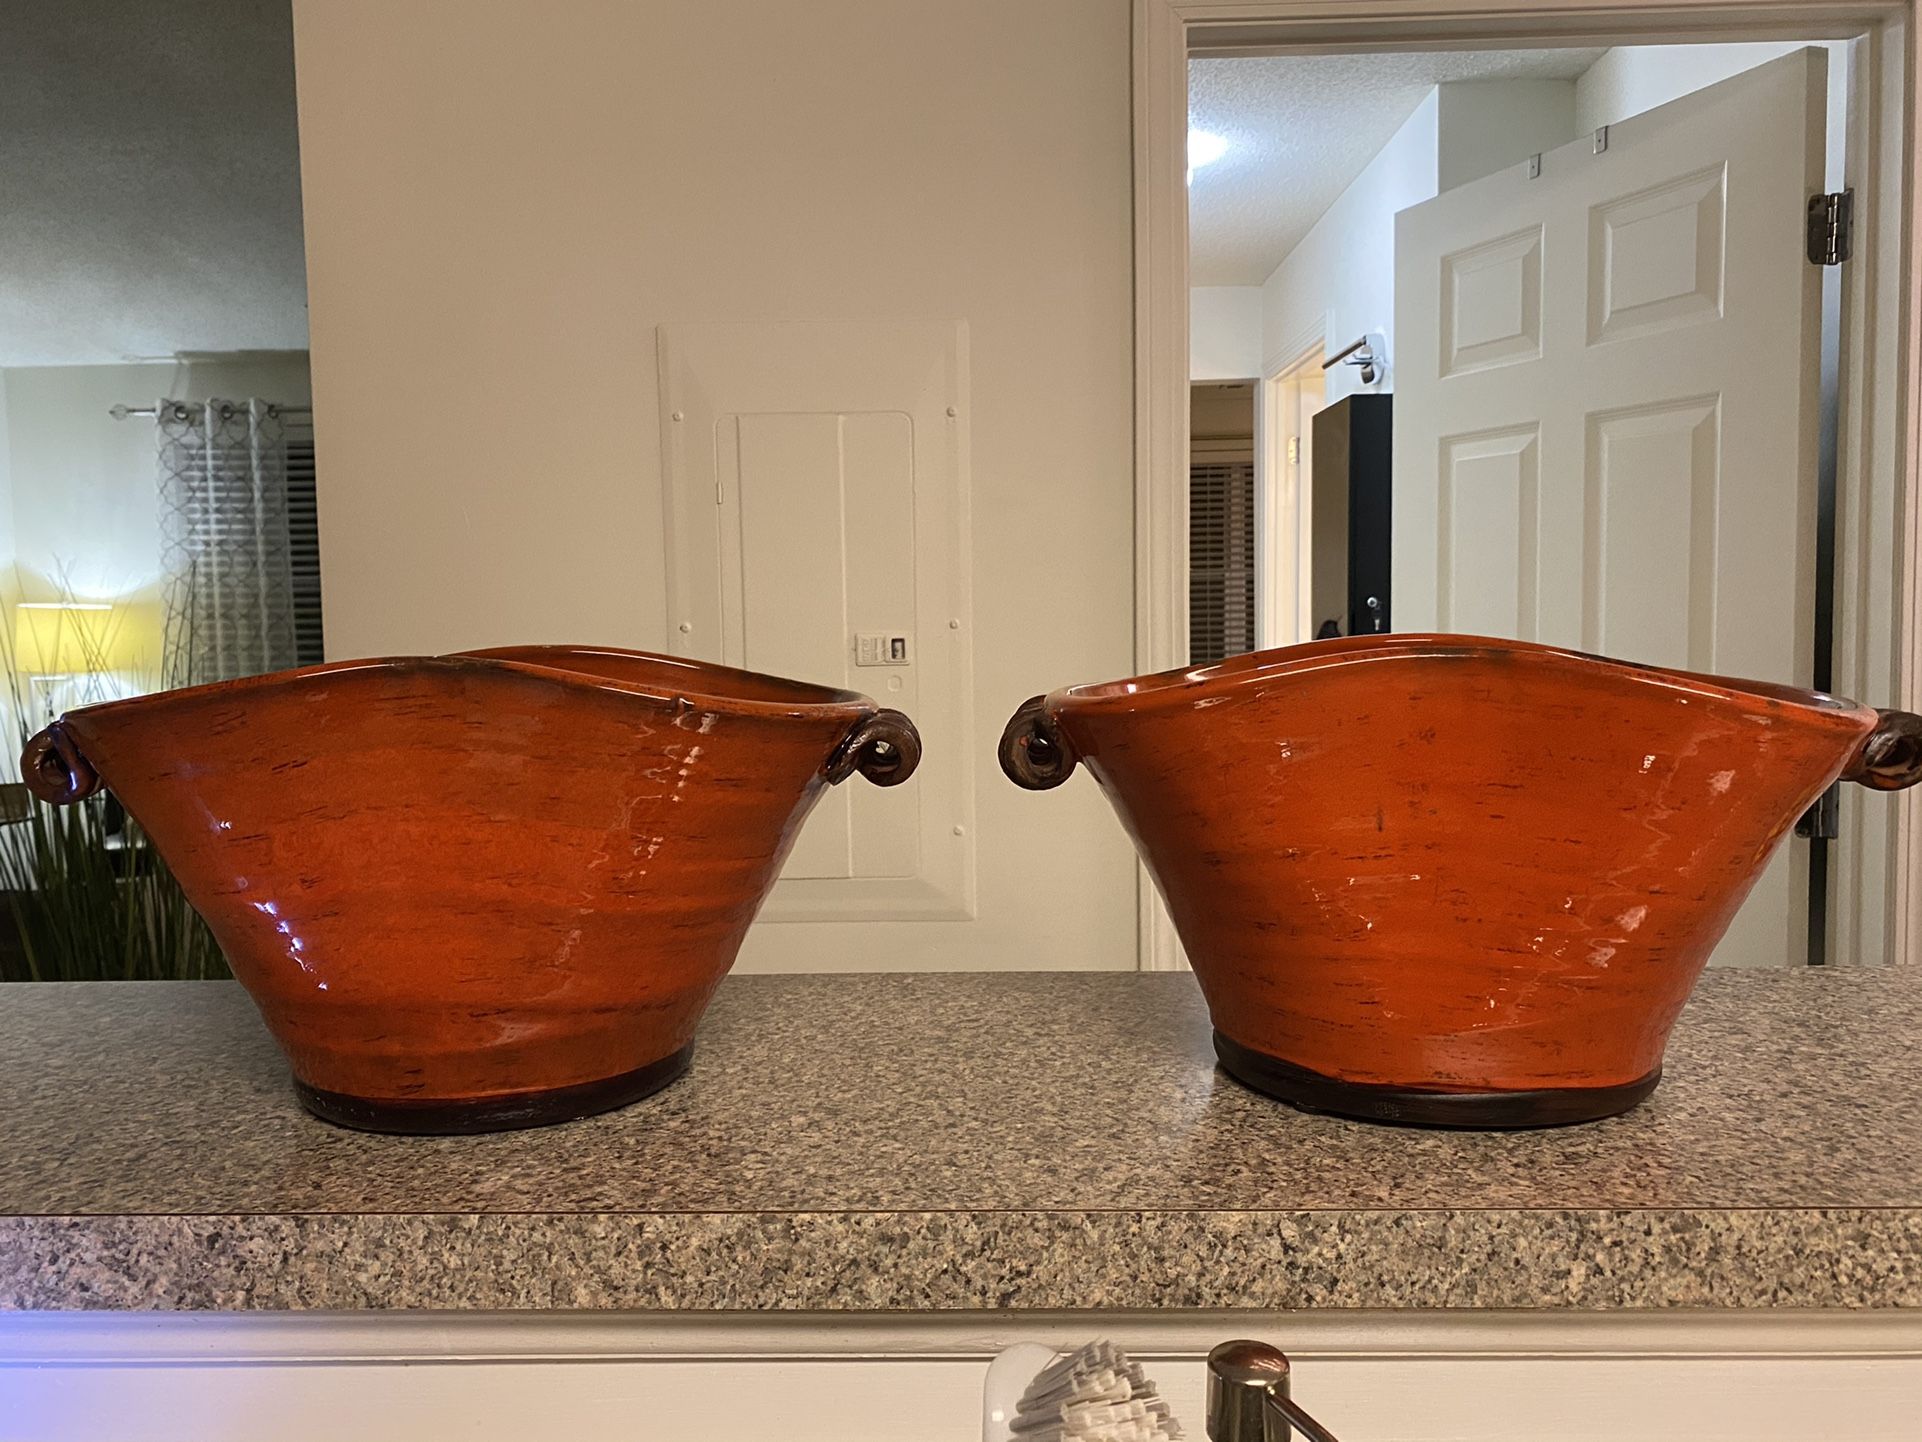 Decorative Pots